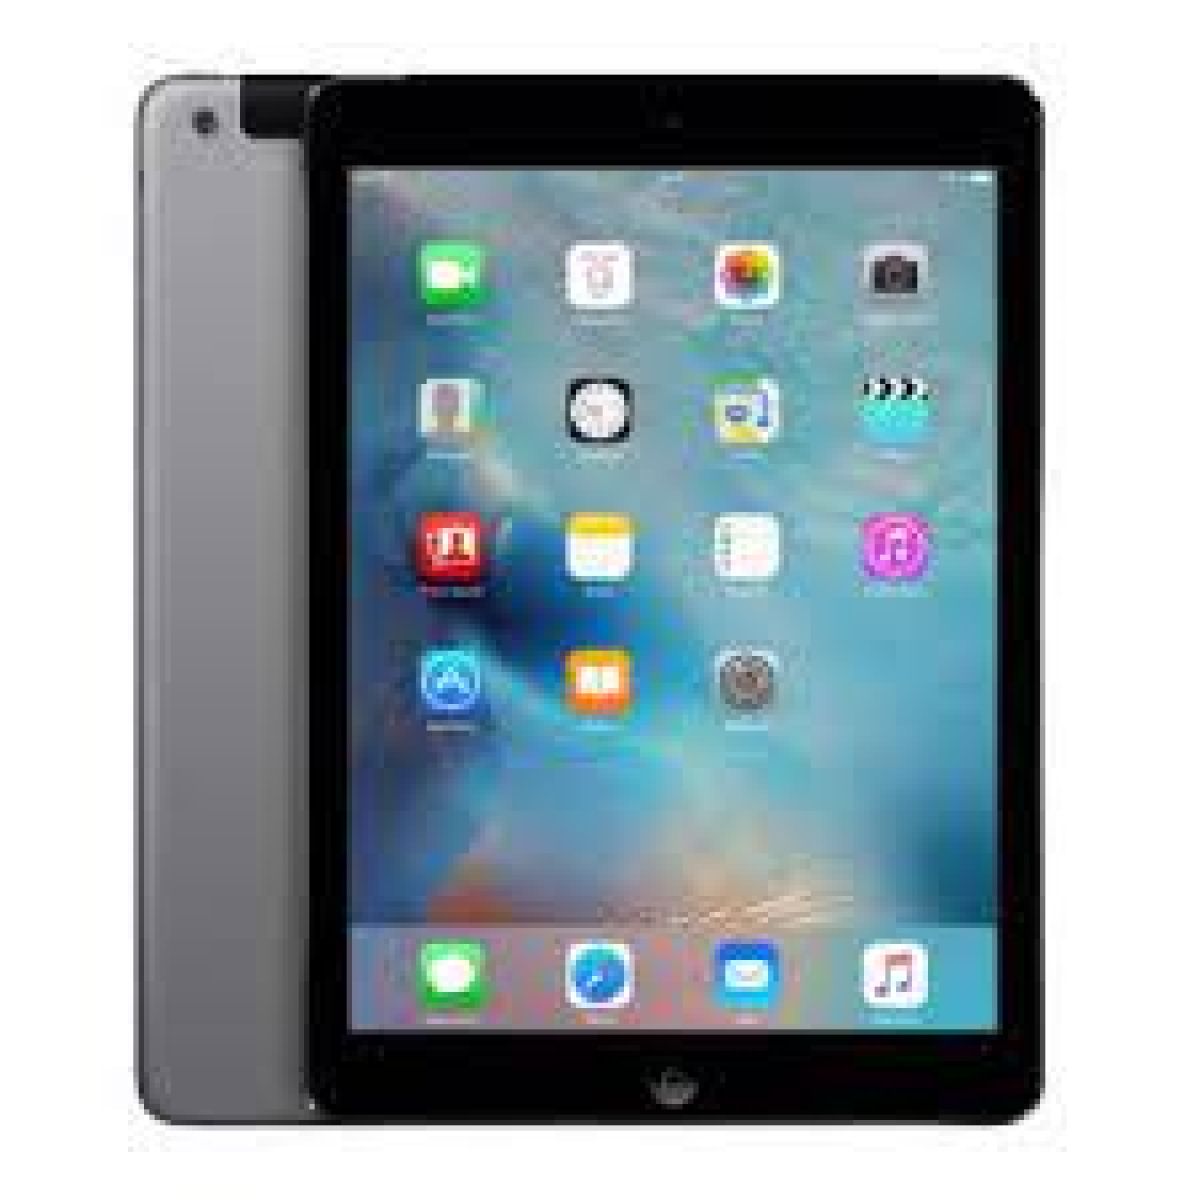 Apple iPad Air A1475 WiFi + 4G 16 Go Gris sidéral